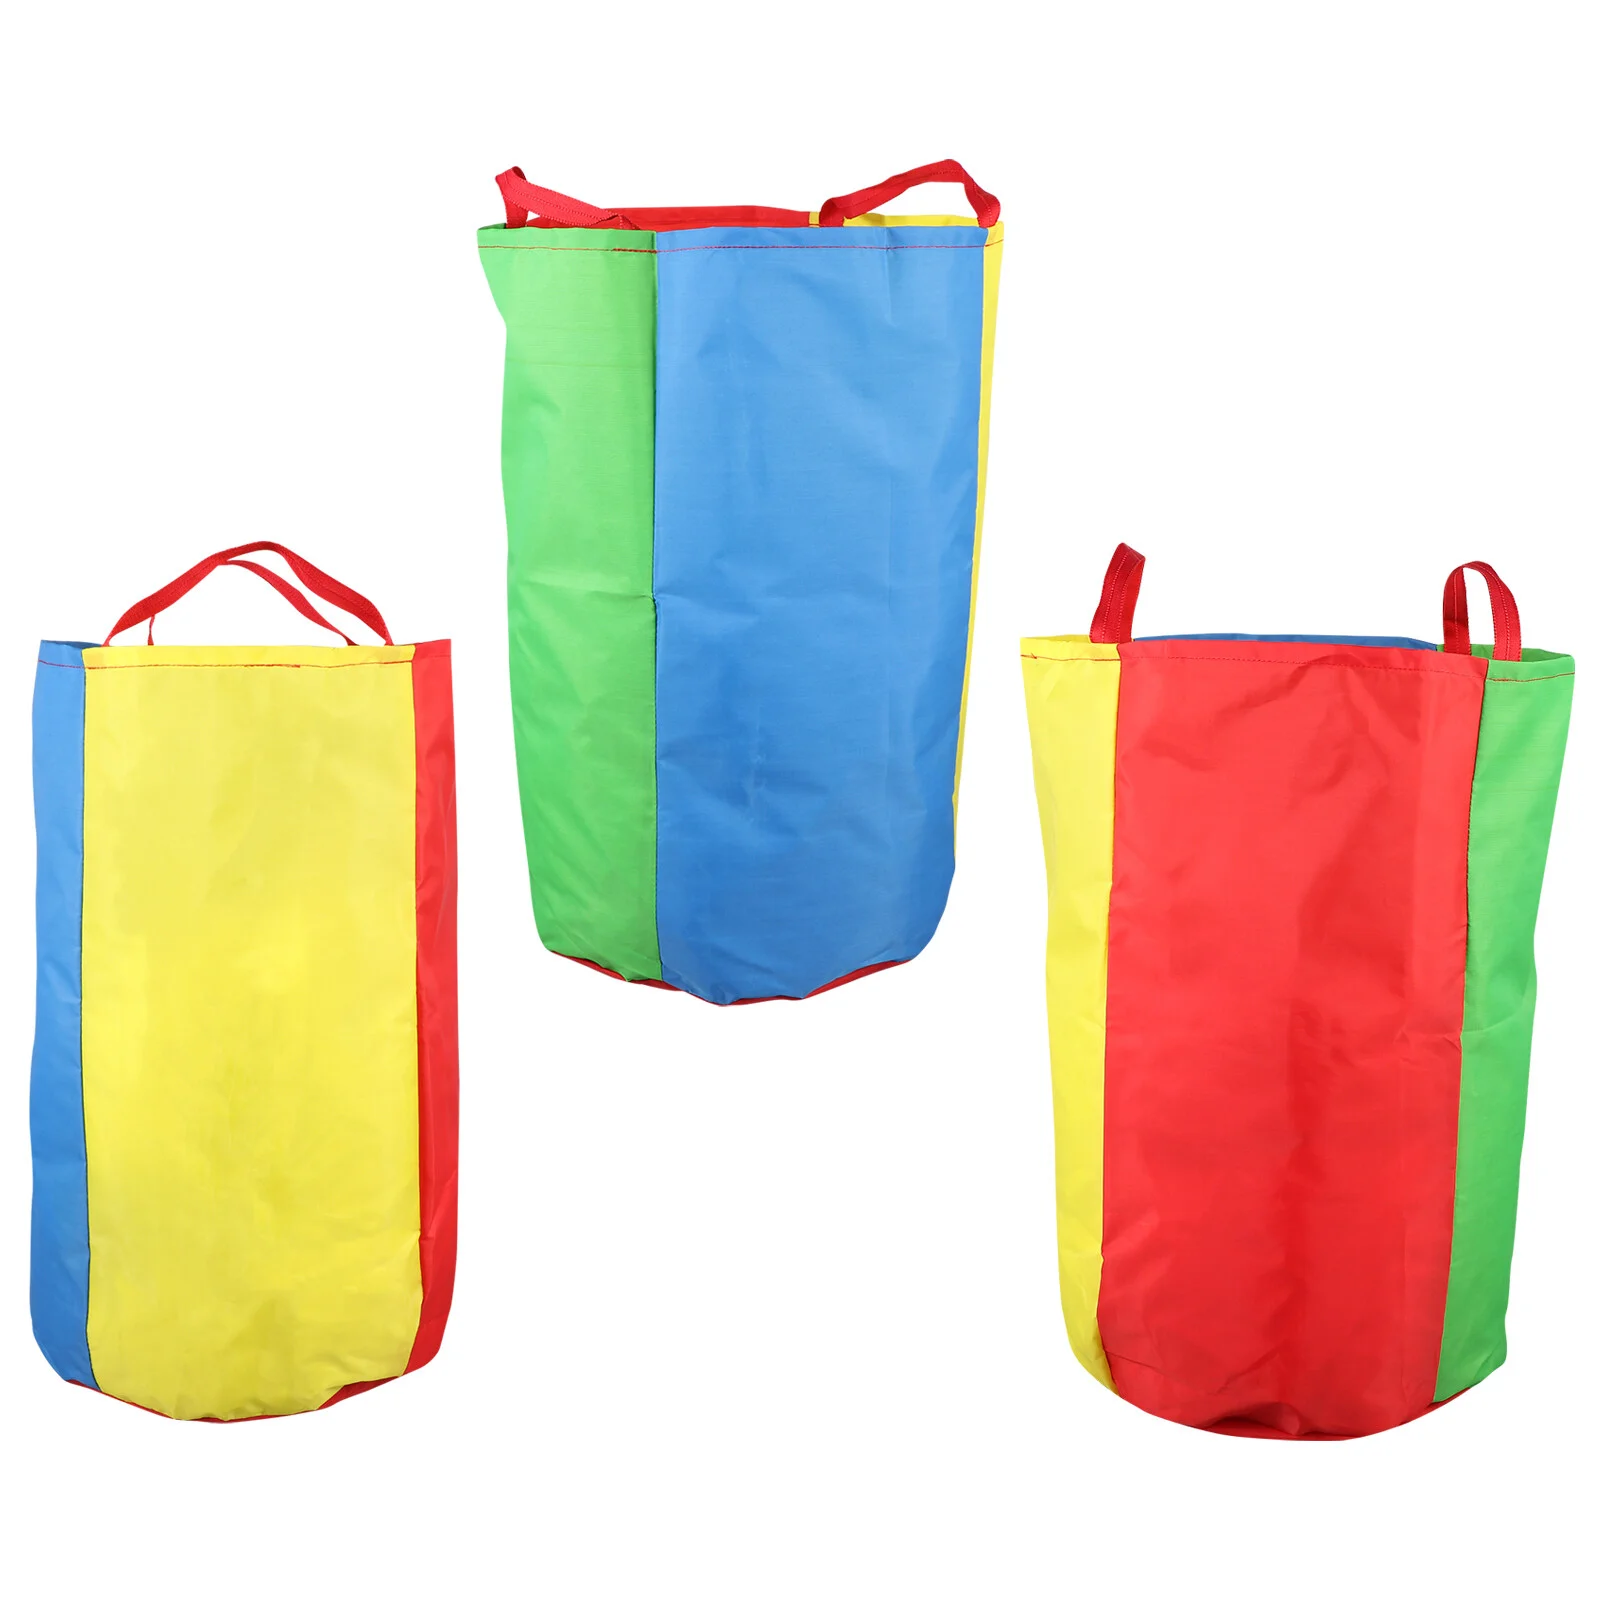 

3 шт. гоночные сумки, игровые сумки для активного отдыха для детей дошкольного возраста